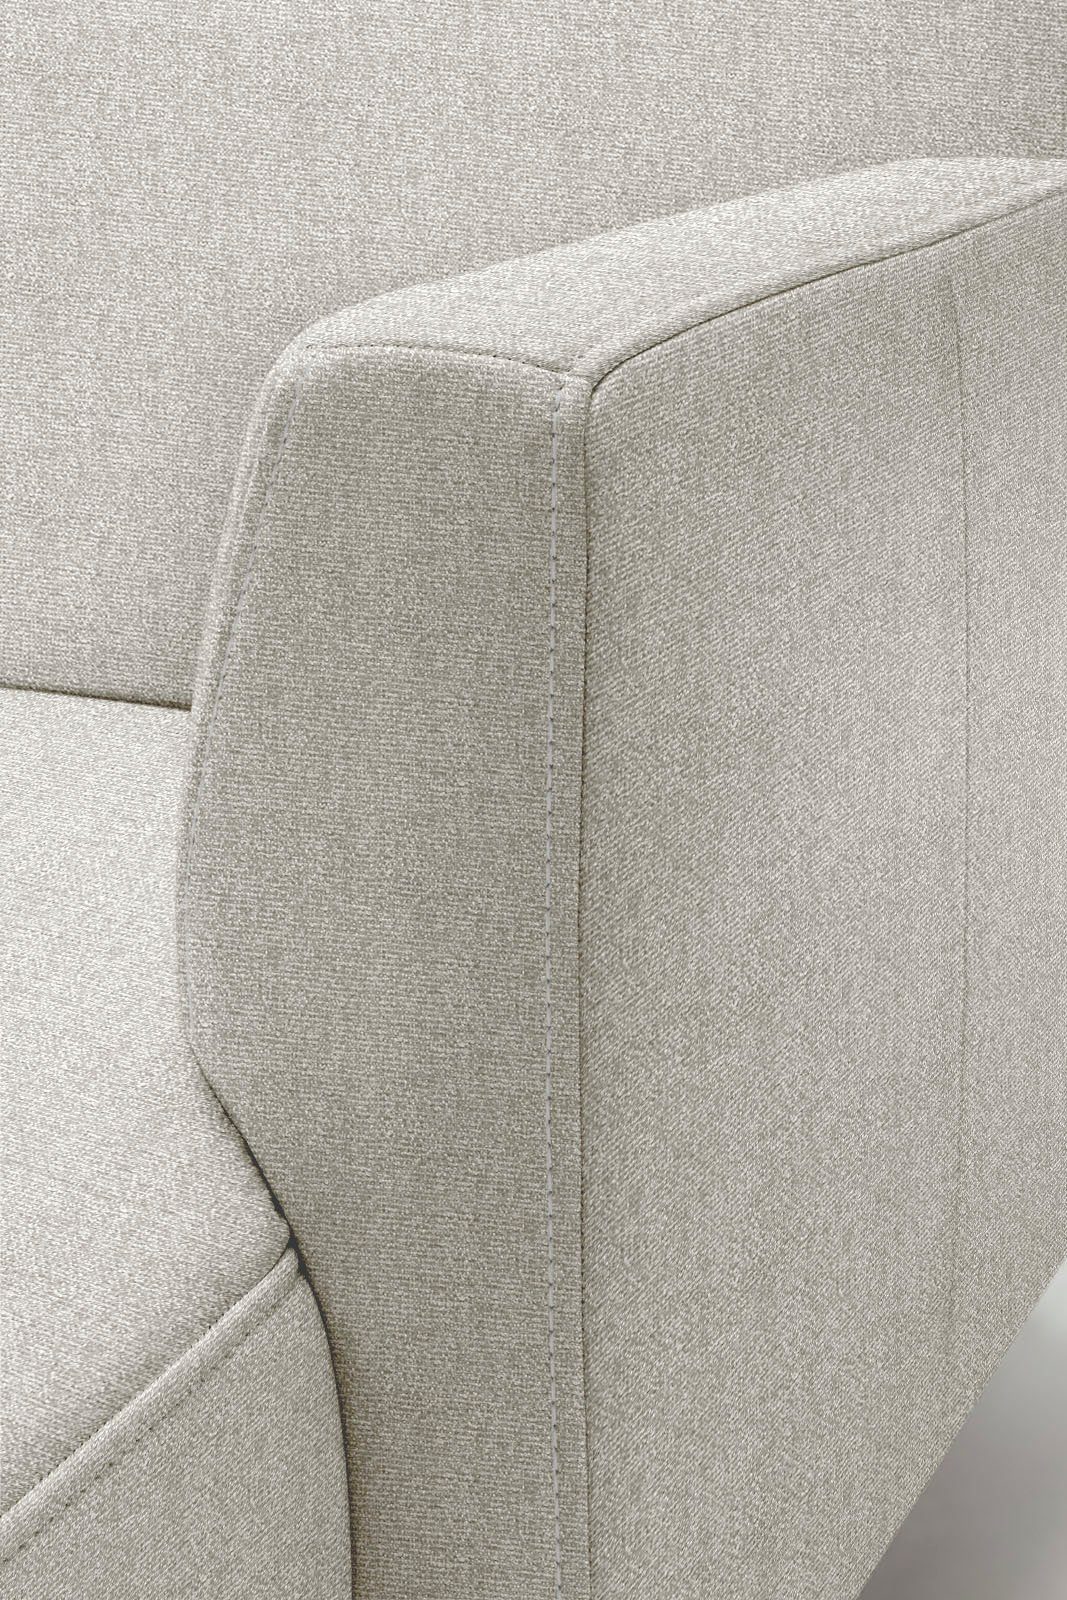 Optik, Ecksofa hs.446, cm schwereloser minimalistischer, 275 in Breite hülsta sofa